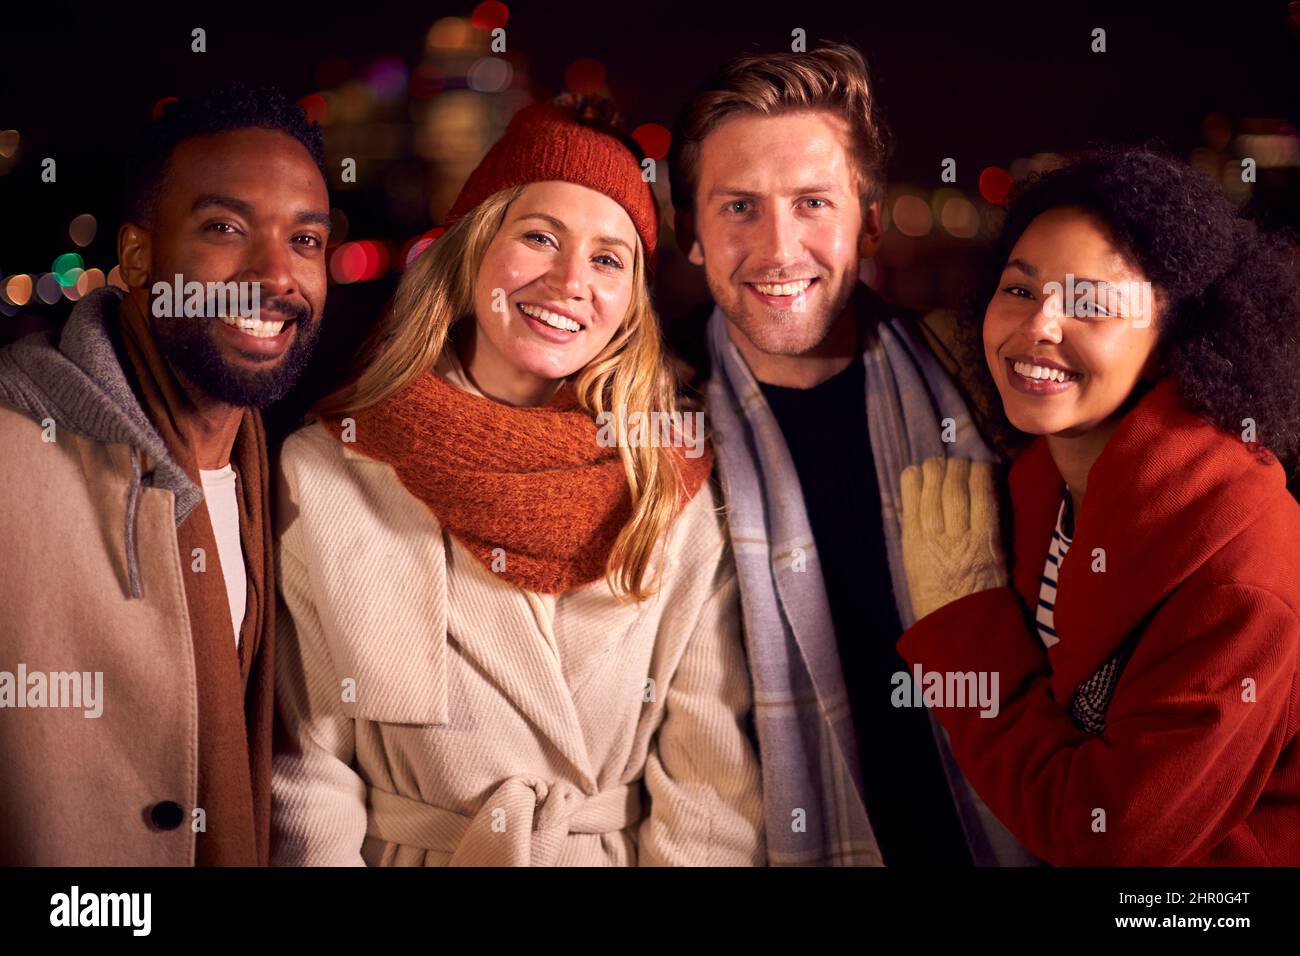 Retrato de Amigos Al aire libre con Coats y Bufandas Encuentro contra las Luces de la Ciudad por la noche Foto de stock